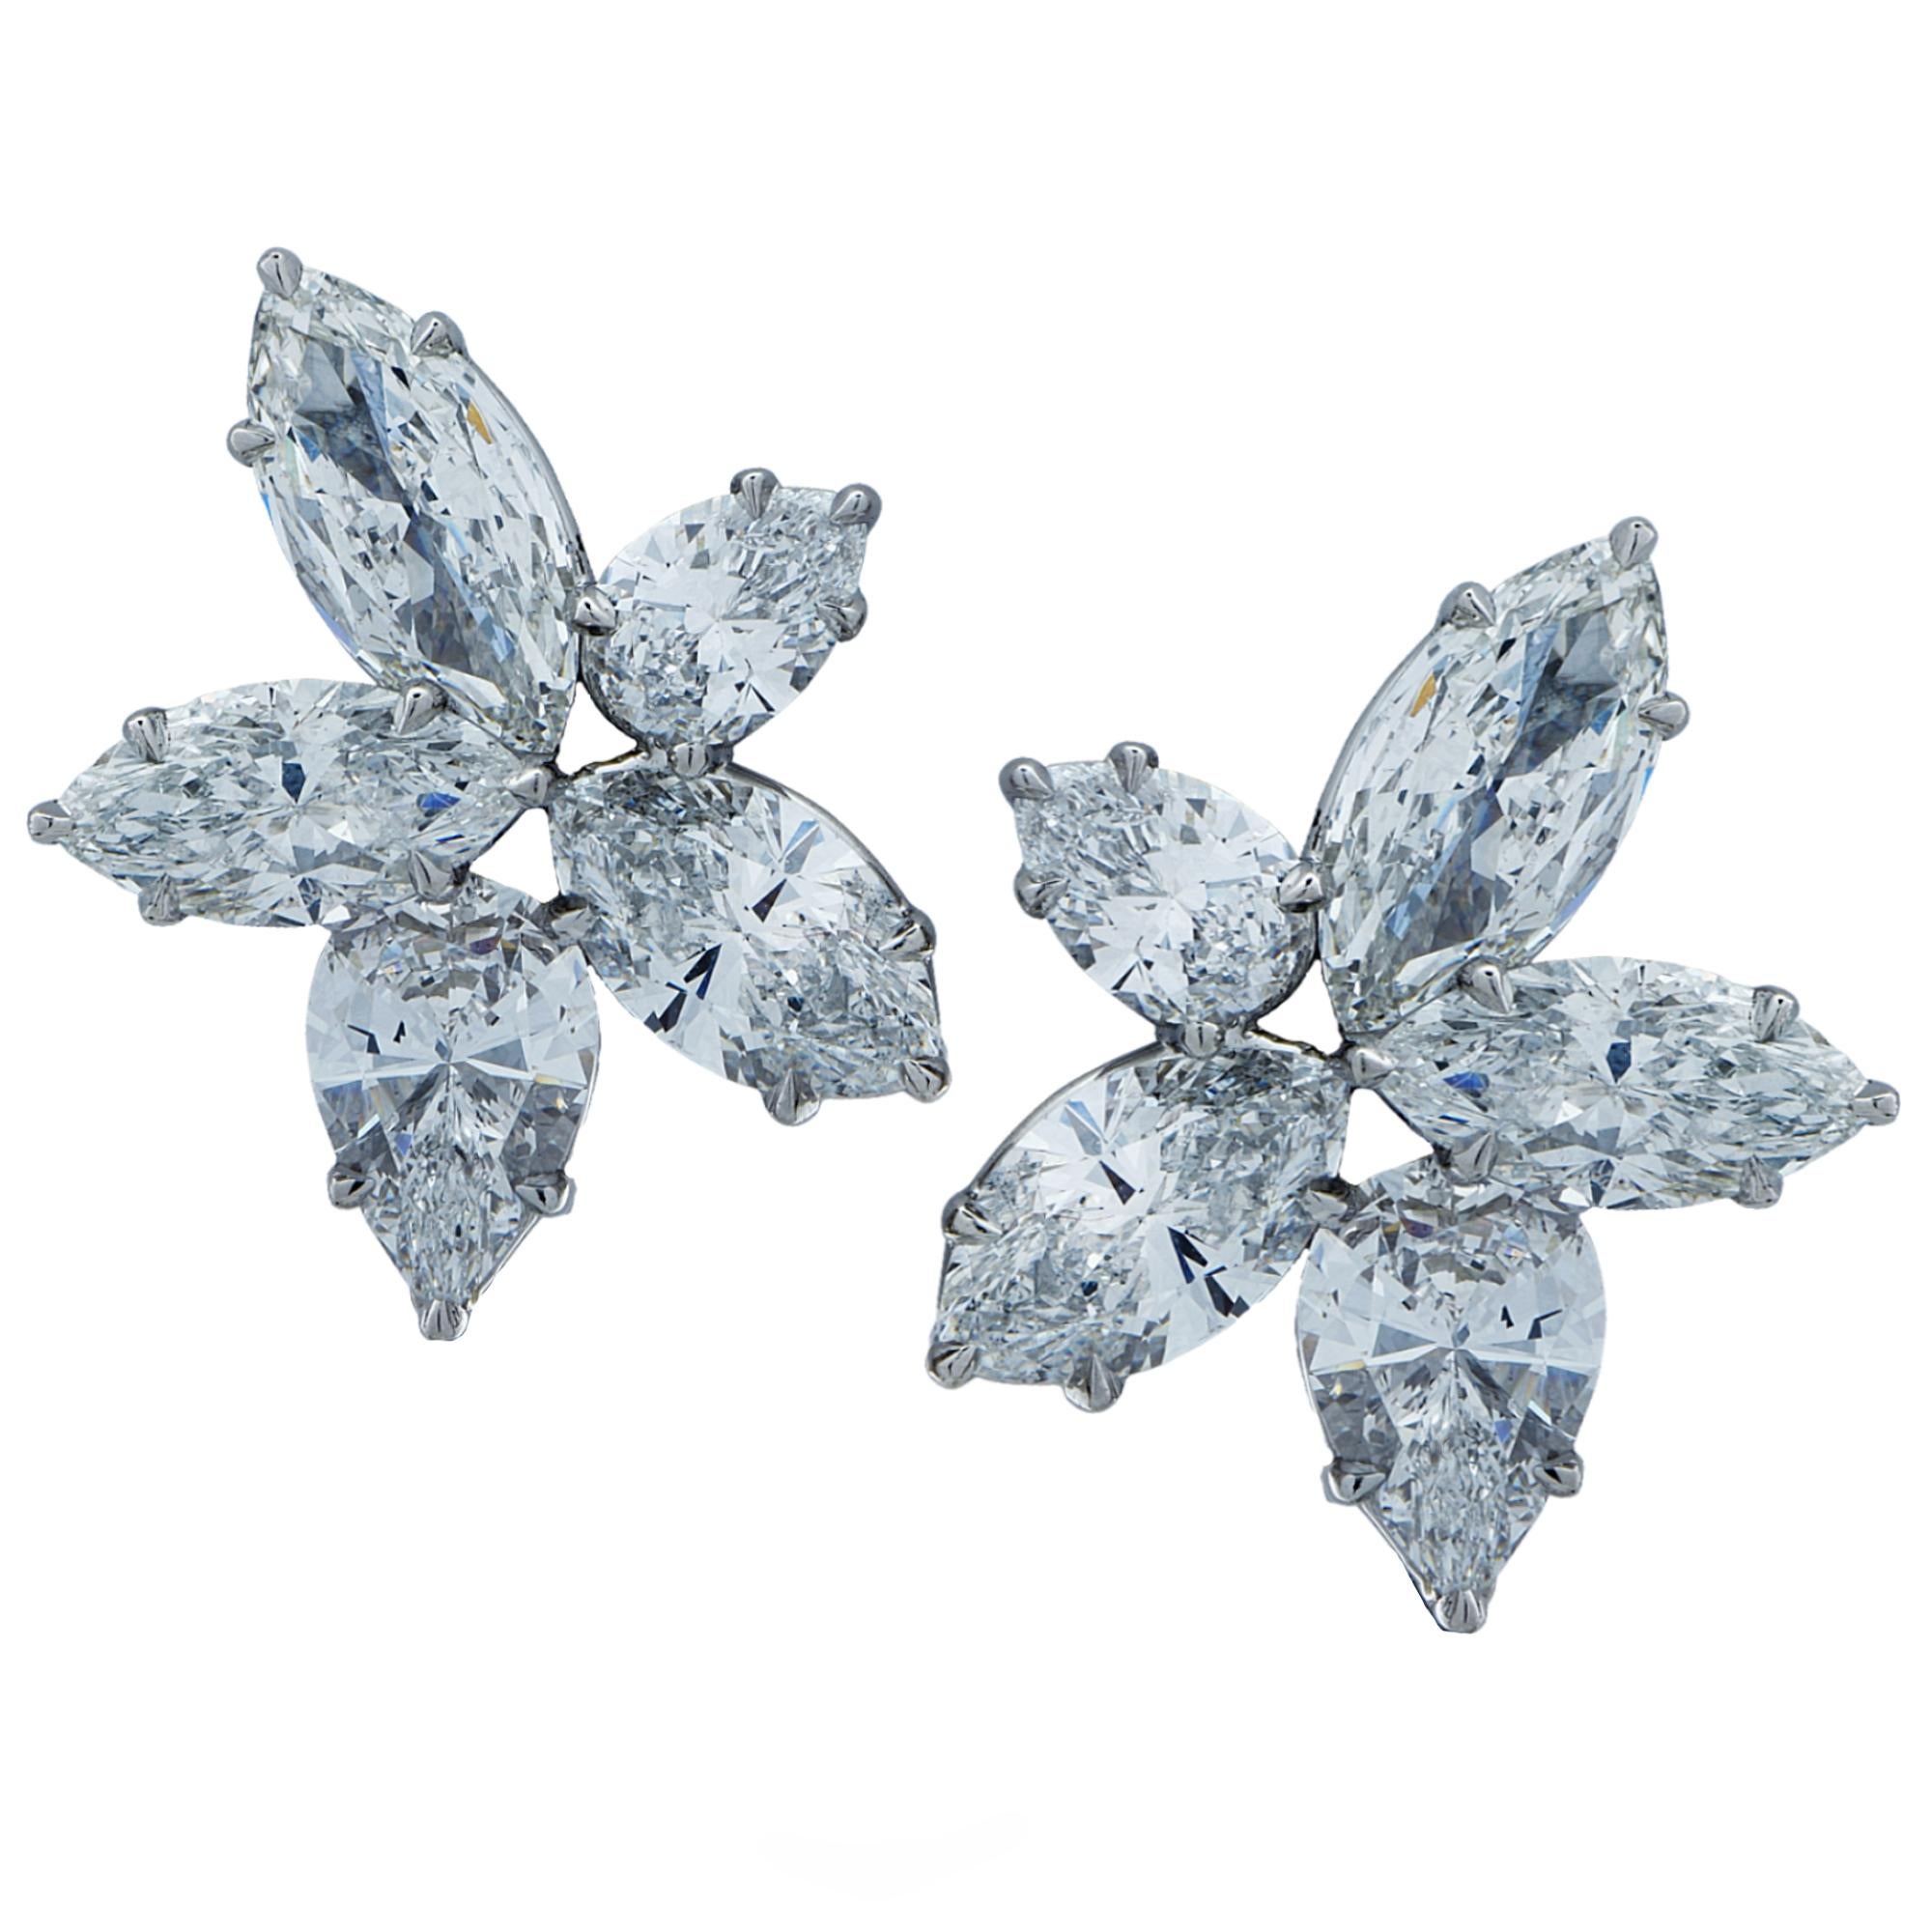 Pear Cut 11.60 Carat Diamond and Platinum Earrings